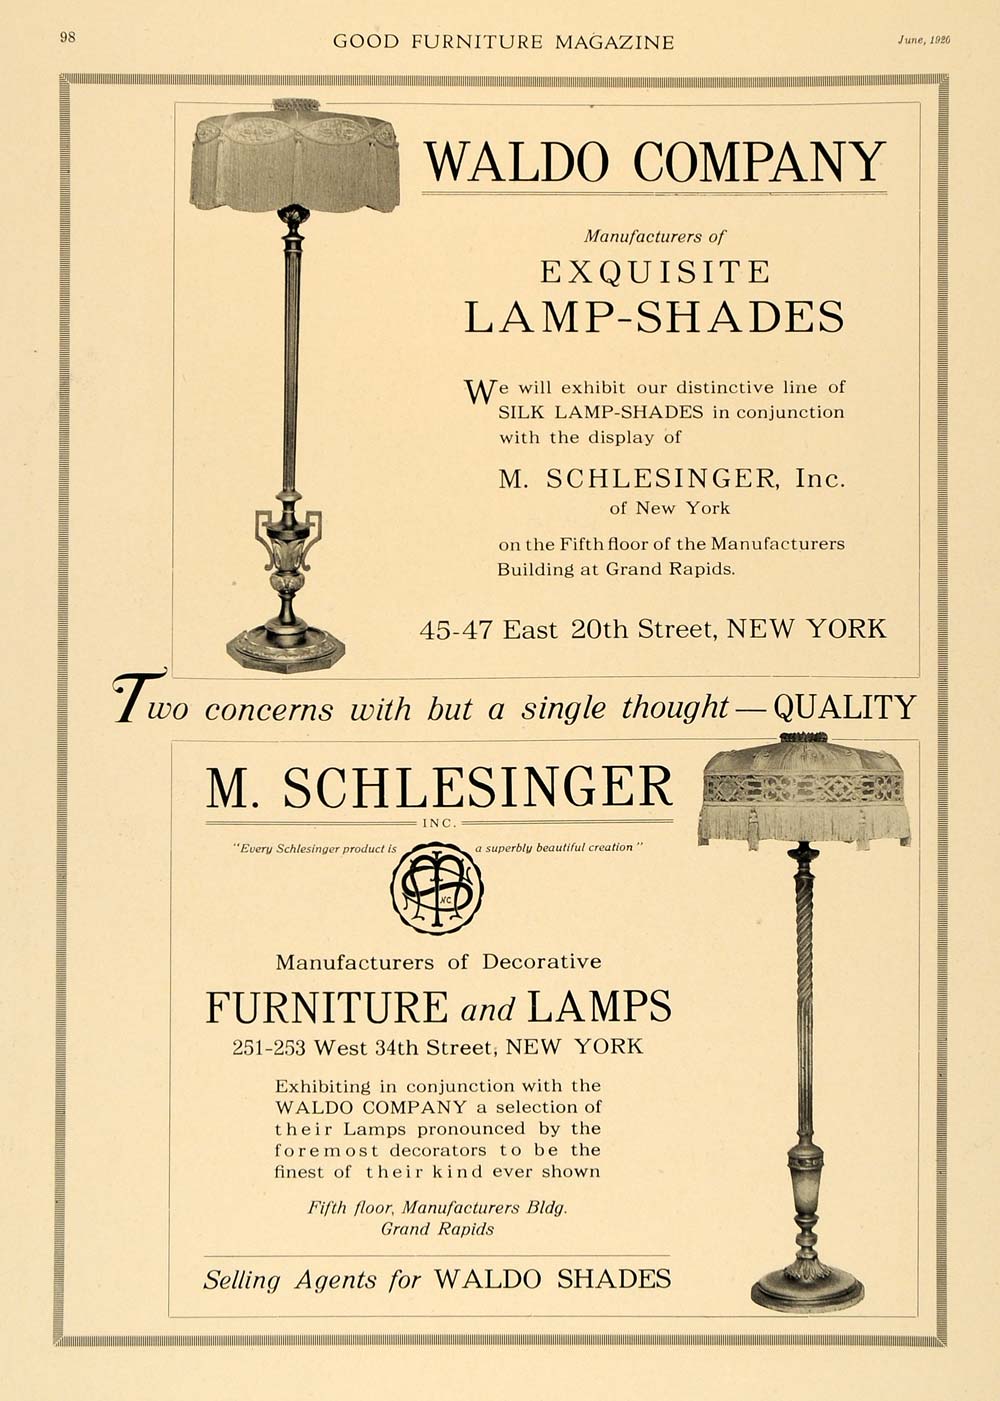 1920 Ad Waldo Furniture Lamps Interior Design Decor Original Advertising Gf1